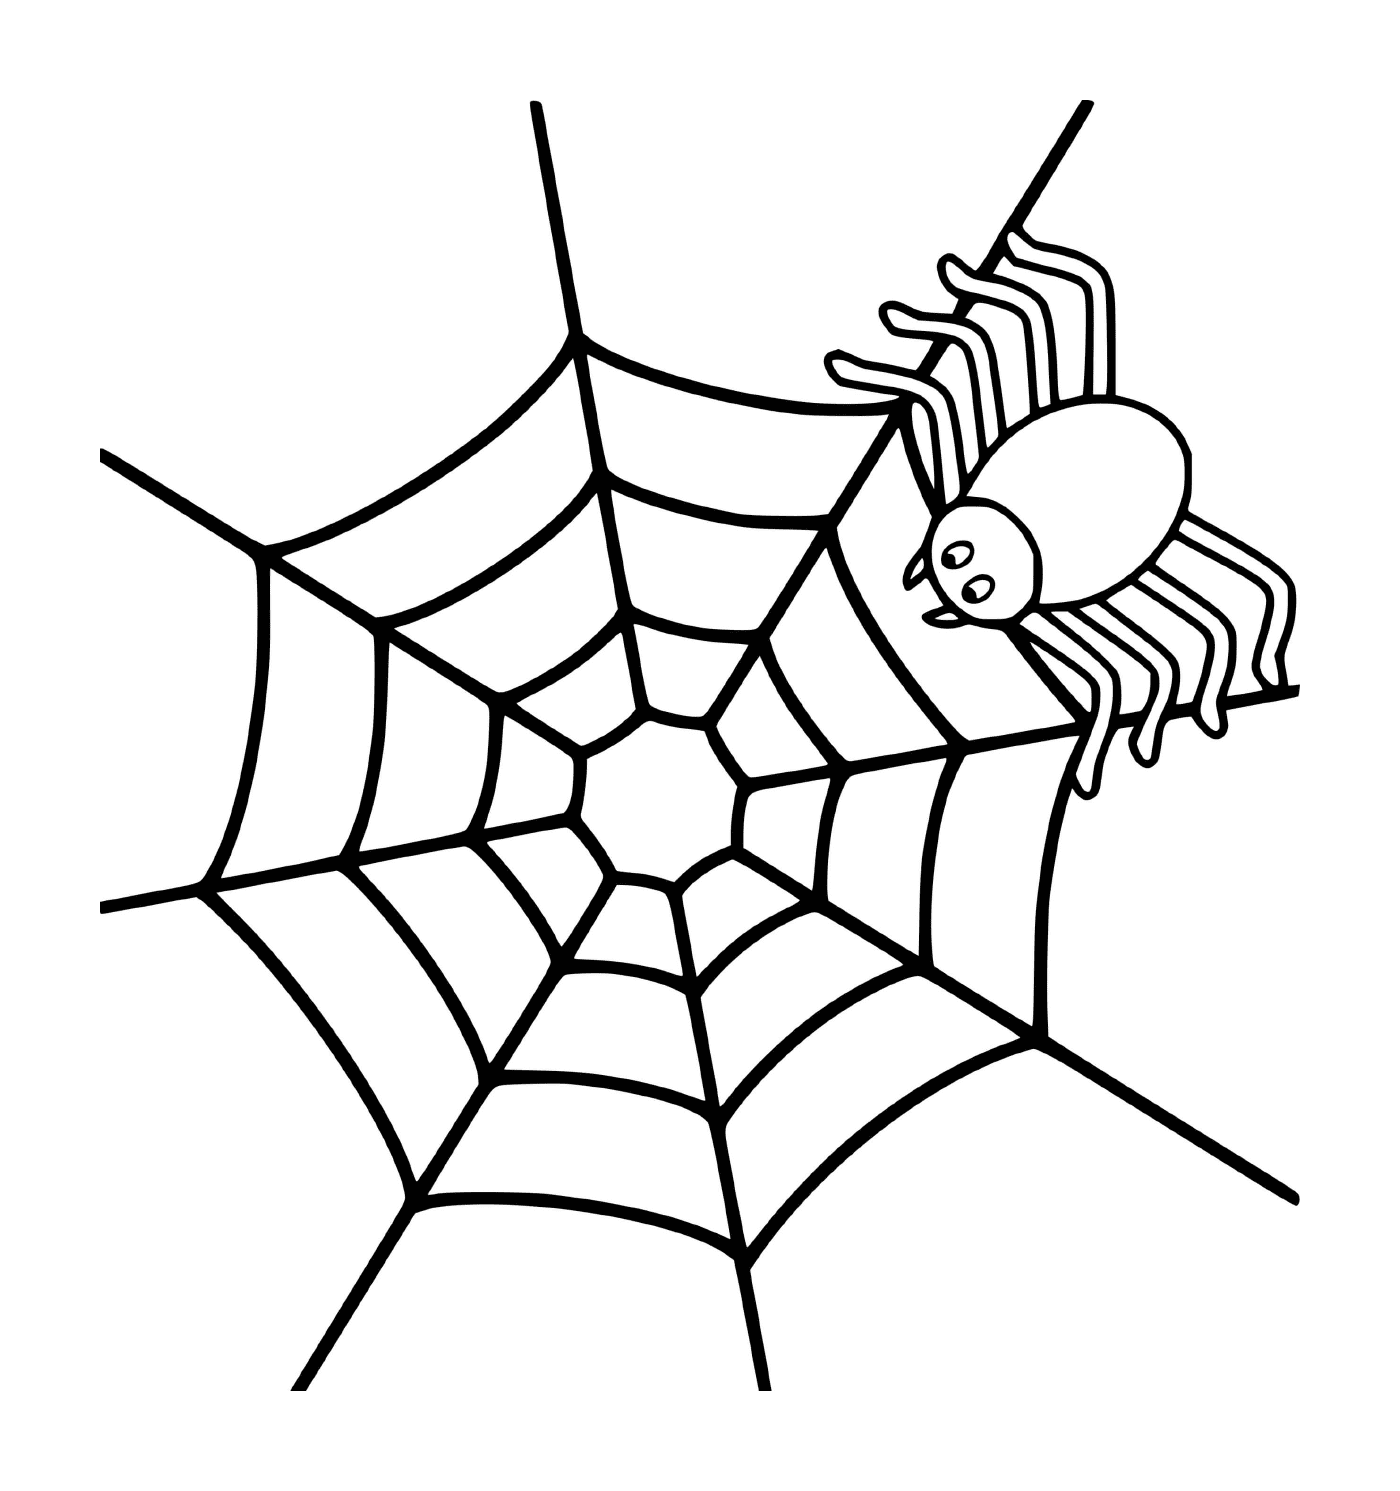  Eine einfache Spinne auf einem Netz 